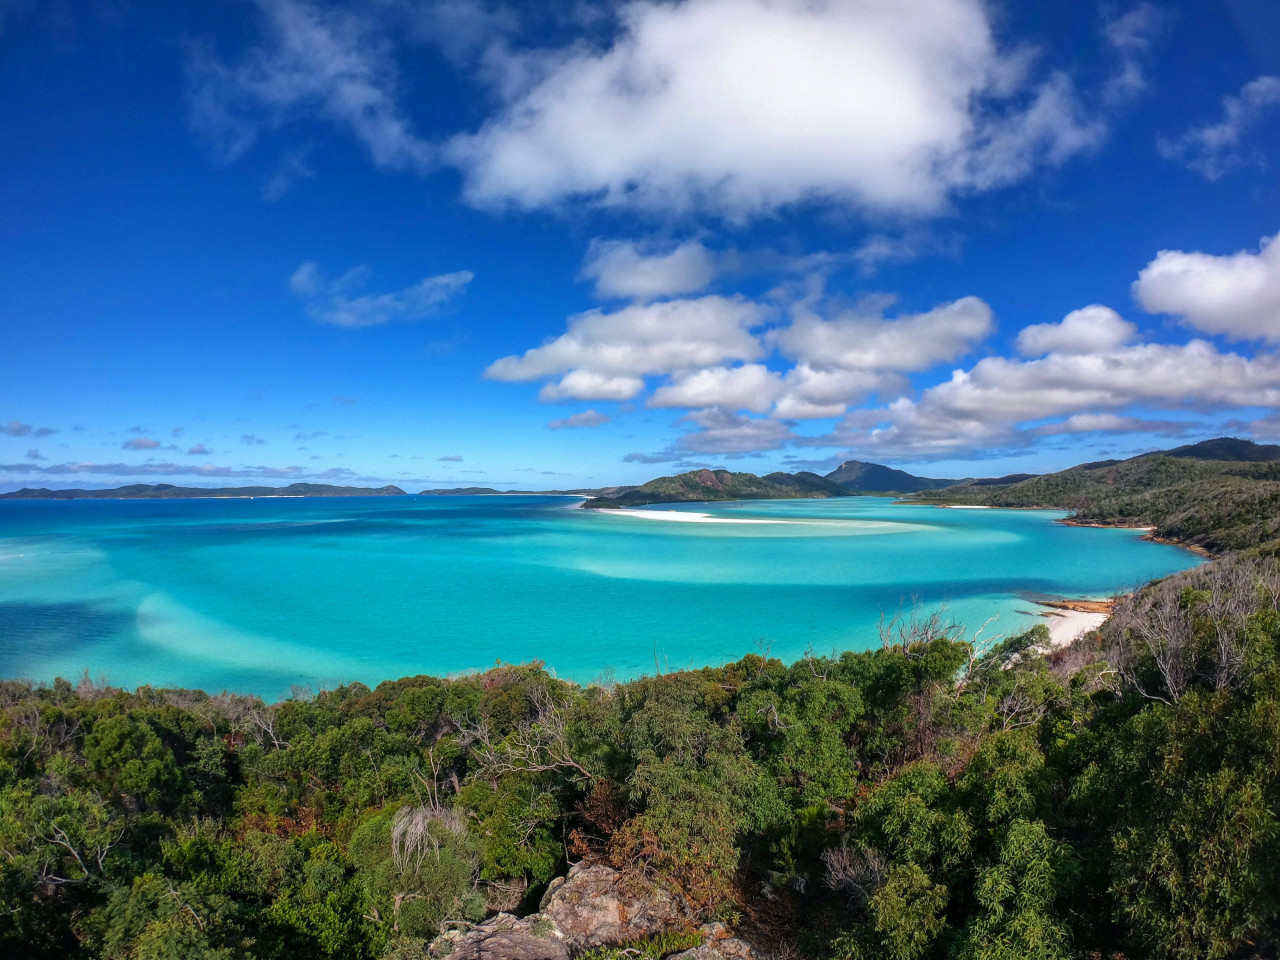 Una isla paradisíaca del Caribe ofrece 184.000 euros al año por vivir ahí. Foto: Unsplash